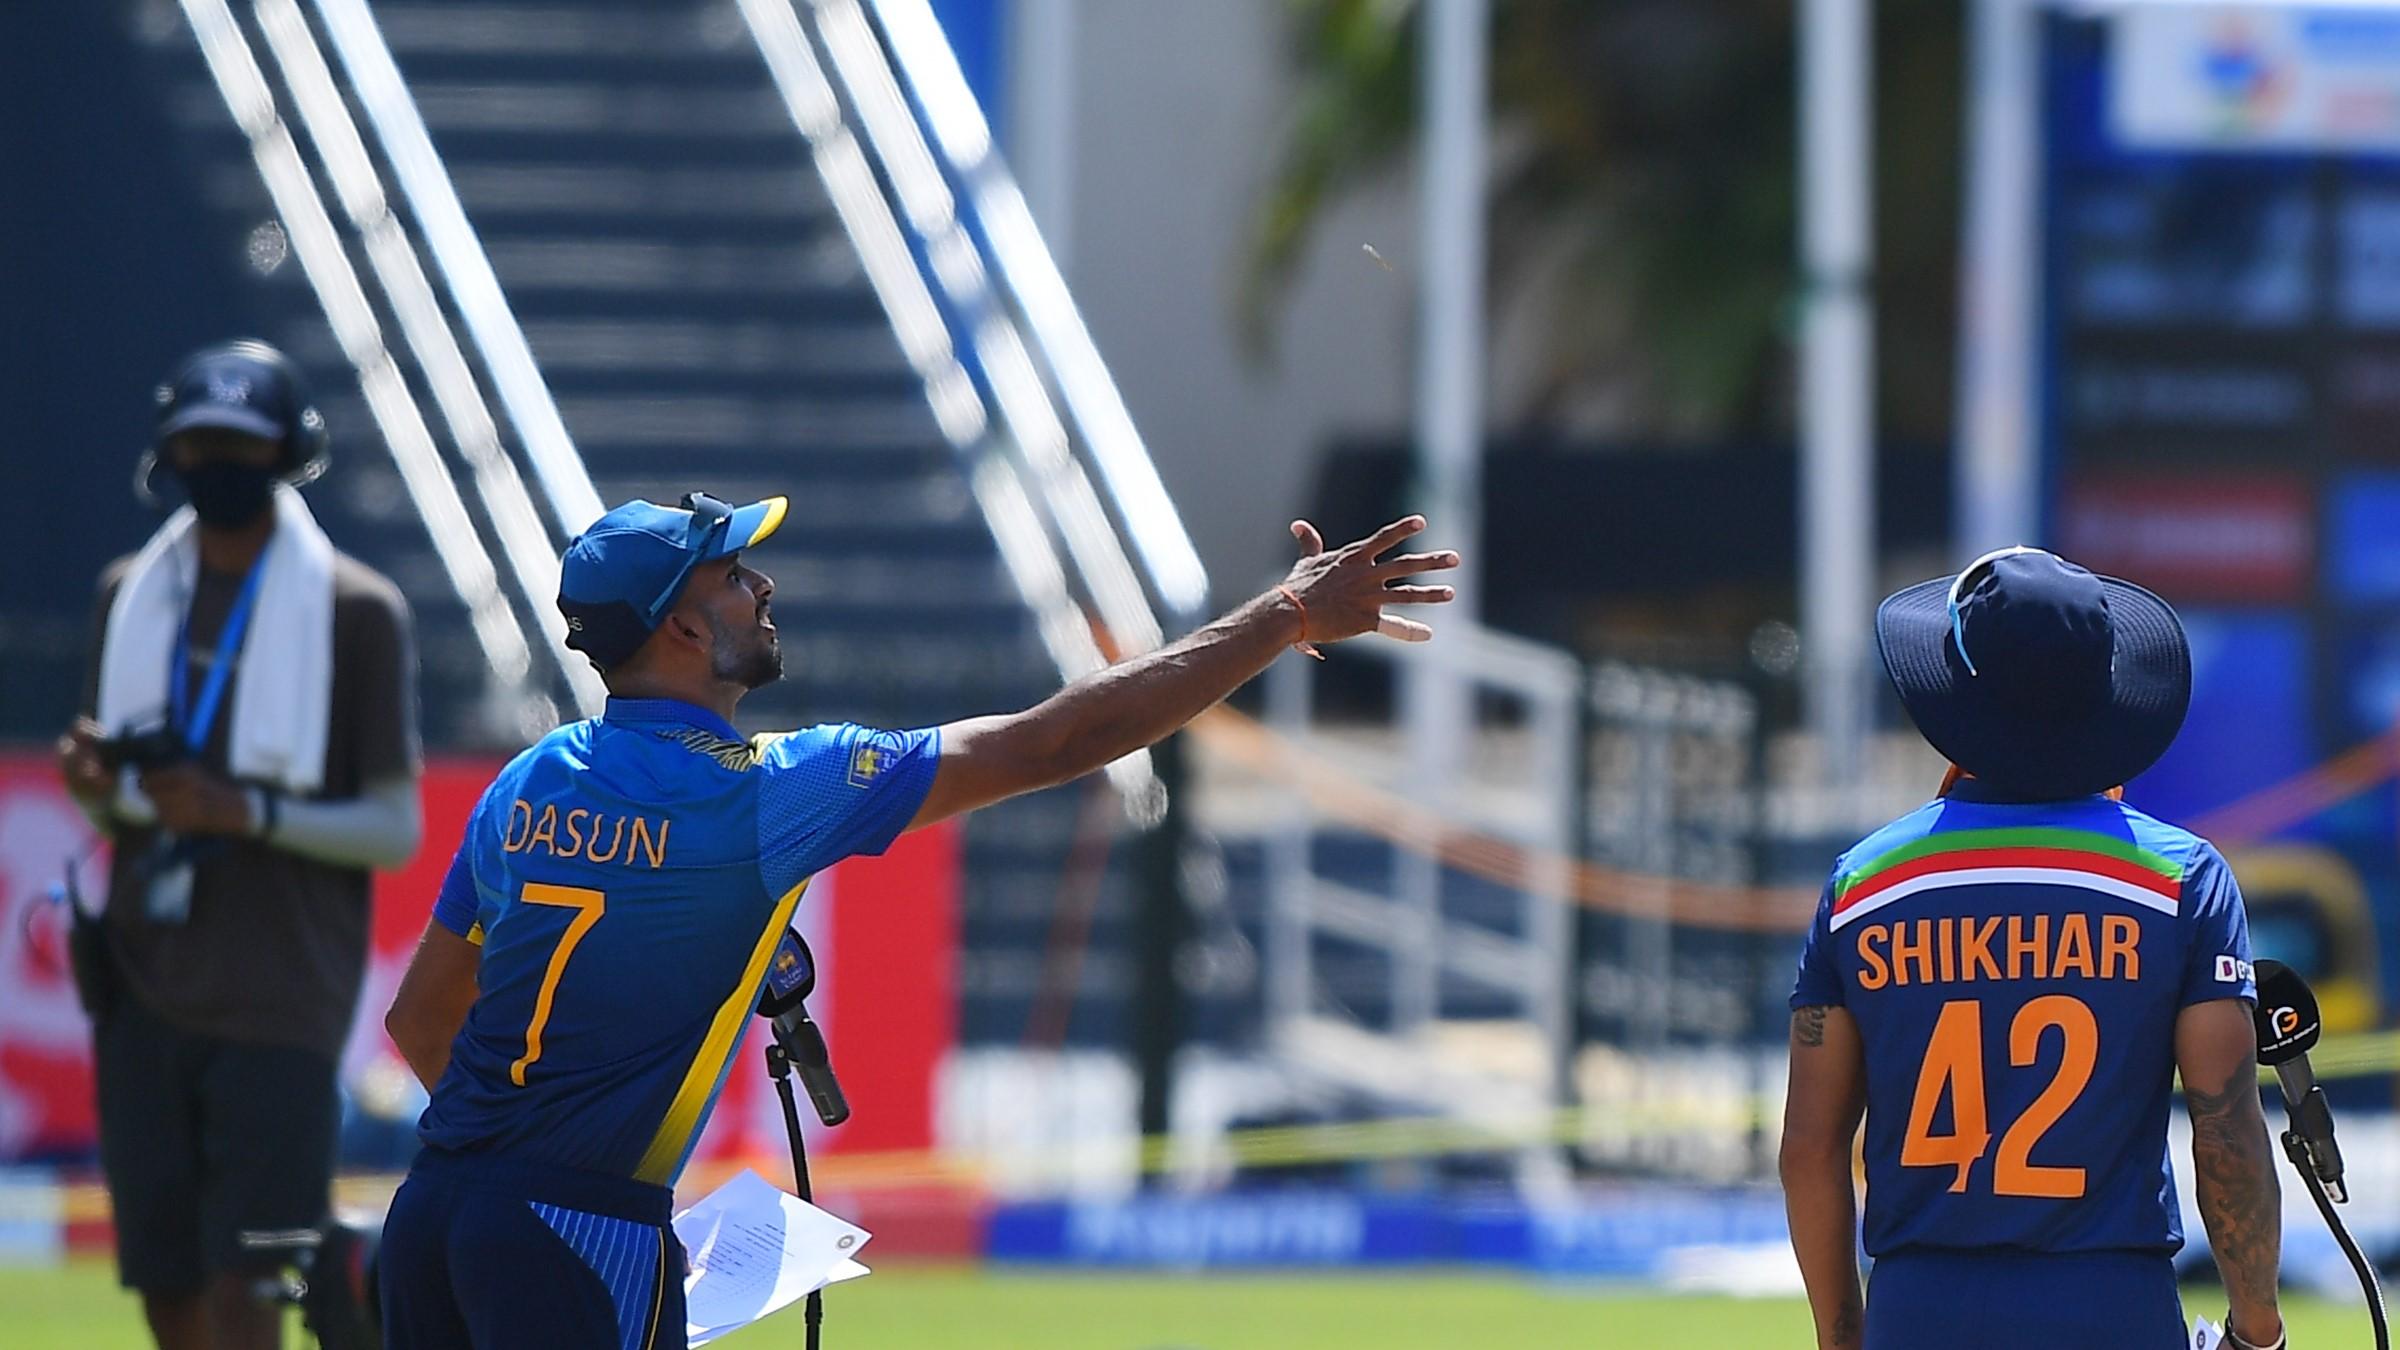 SL vs IND: श्रीलंका ने टॉस जीतकर पहले बल्लेबाजी का फैसला किया, टीम में एक बदलाव